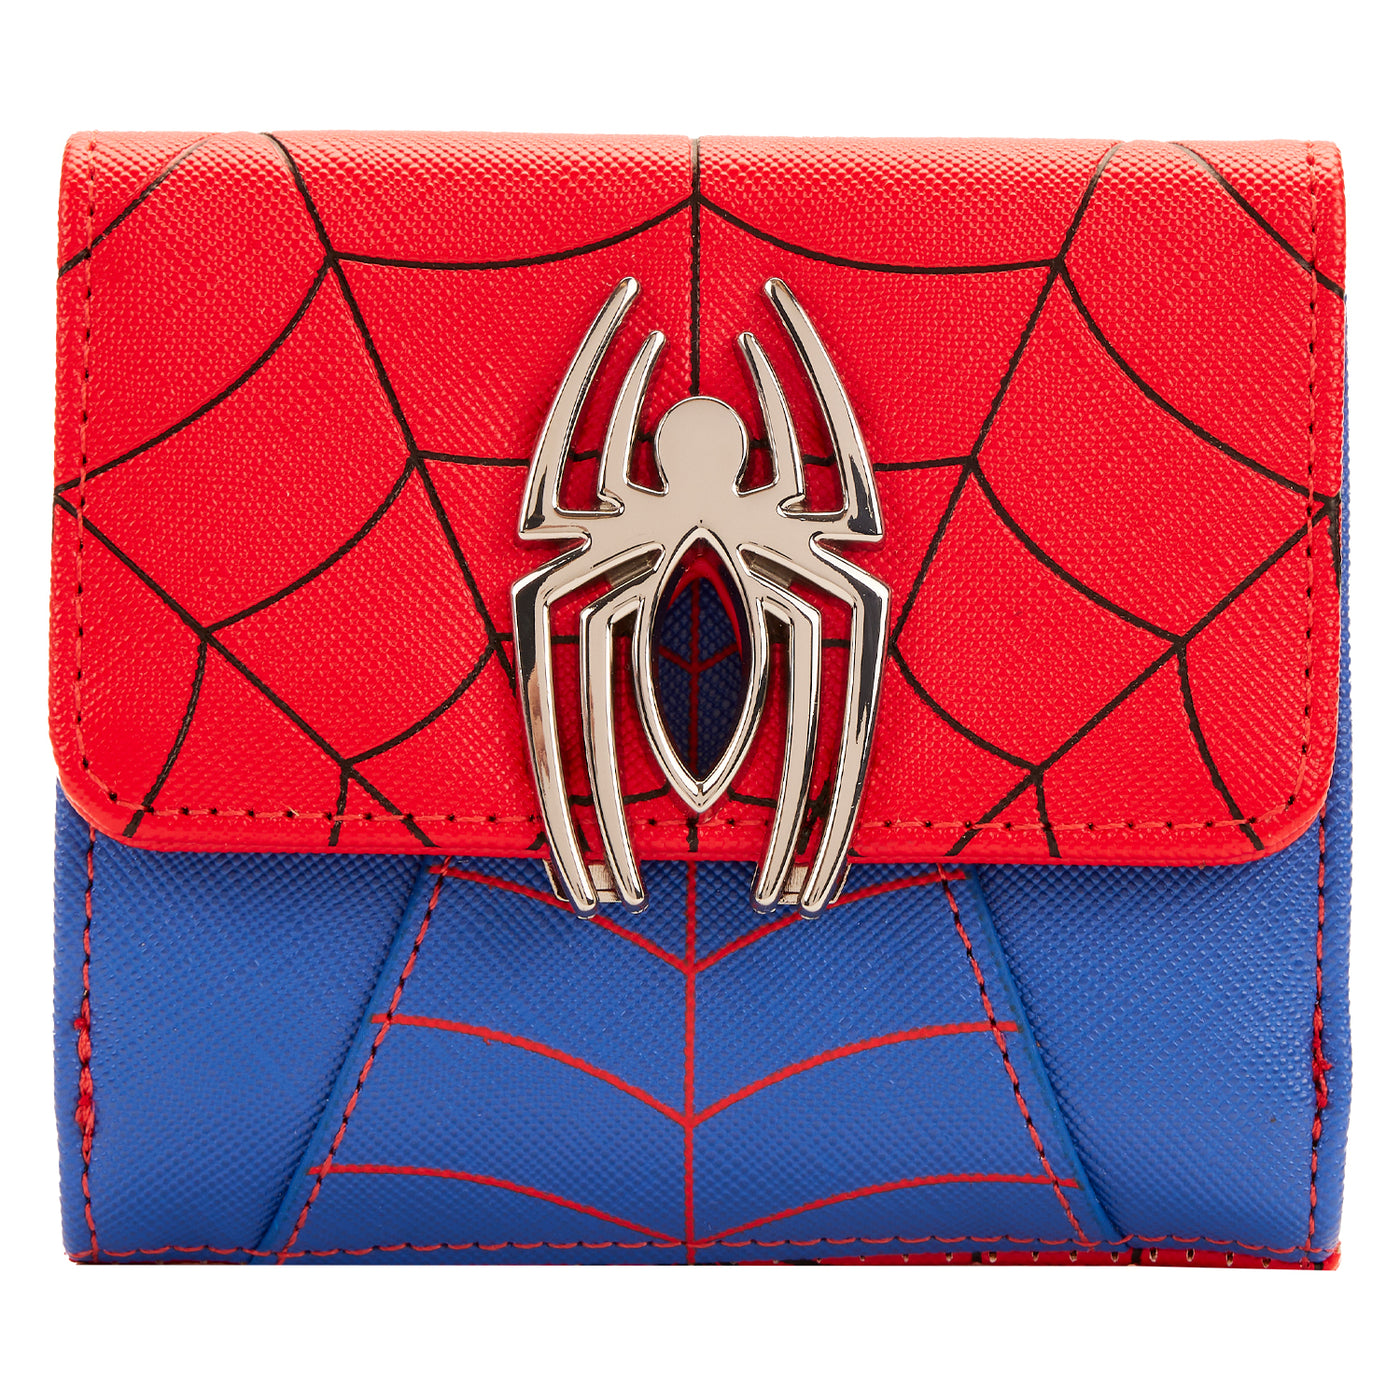 Marvel Spider-man Wallet